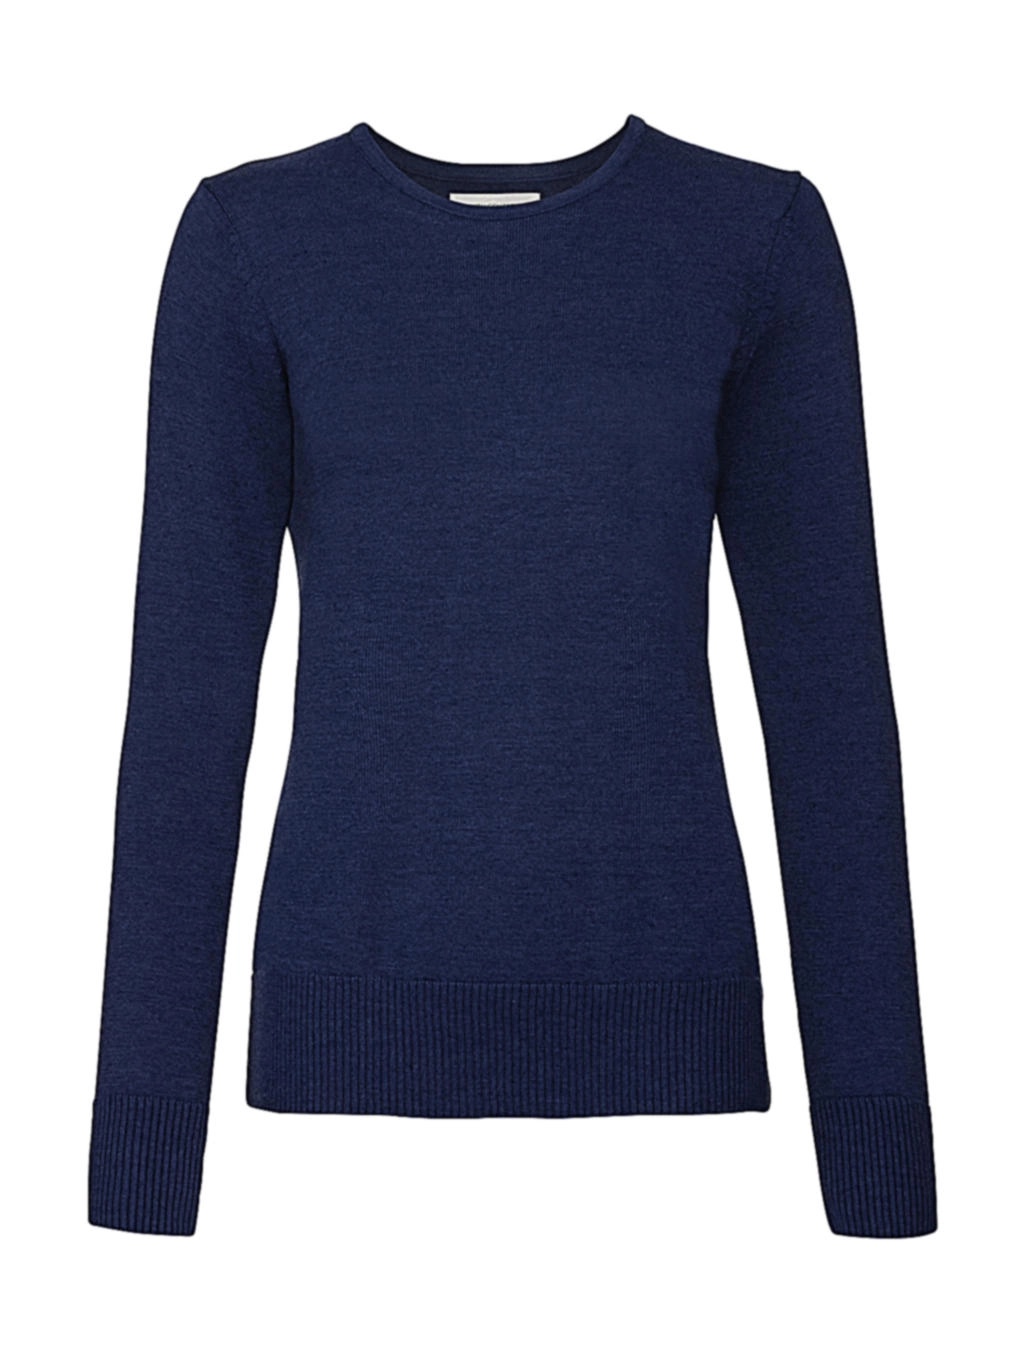 Ladies` Crew Neck Knitted Pullover zum Besticken und Bedrucken in der Farbe Denim Marl mit Ihren Logo, Schriftzug oder Motiv.